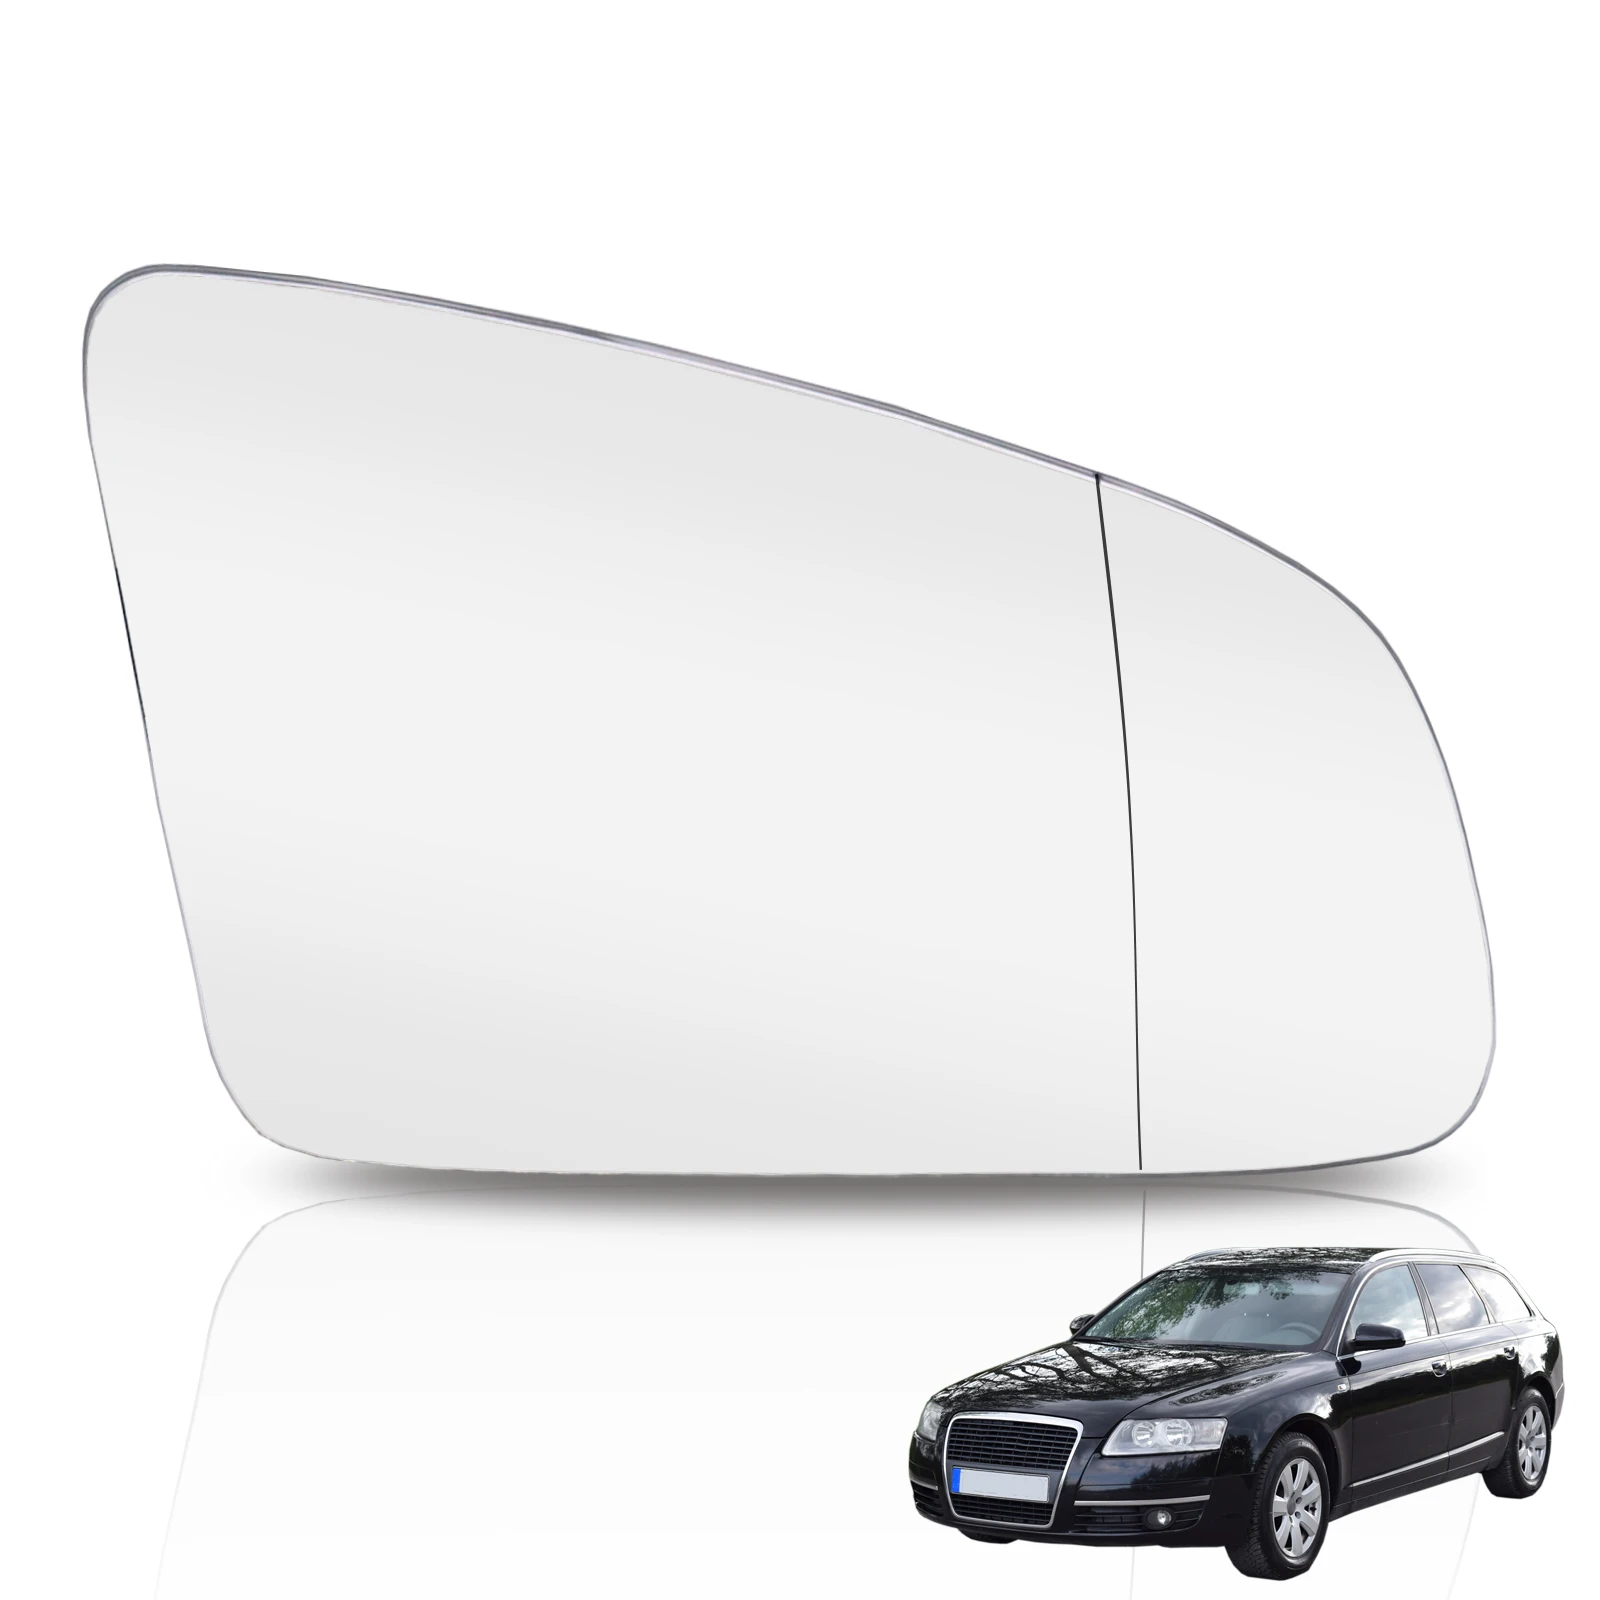 Правое Боковое Зеркало Заднего Вида Автомобиля Стекло Зеркала заднего Вида С Клеевым Покрытием Для Audi A3 8P A4 B6 B7 A6 C6 4F 2005-2008